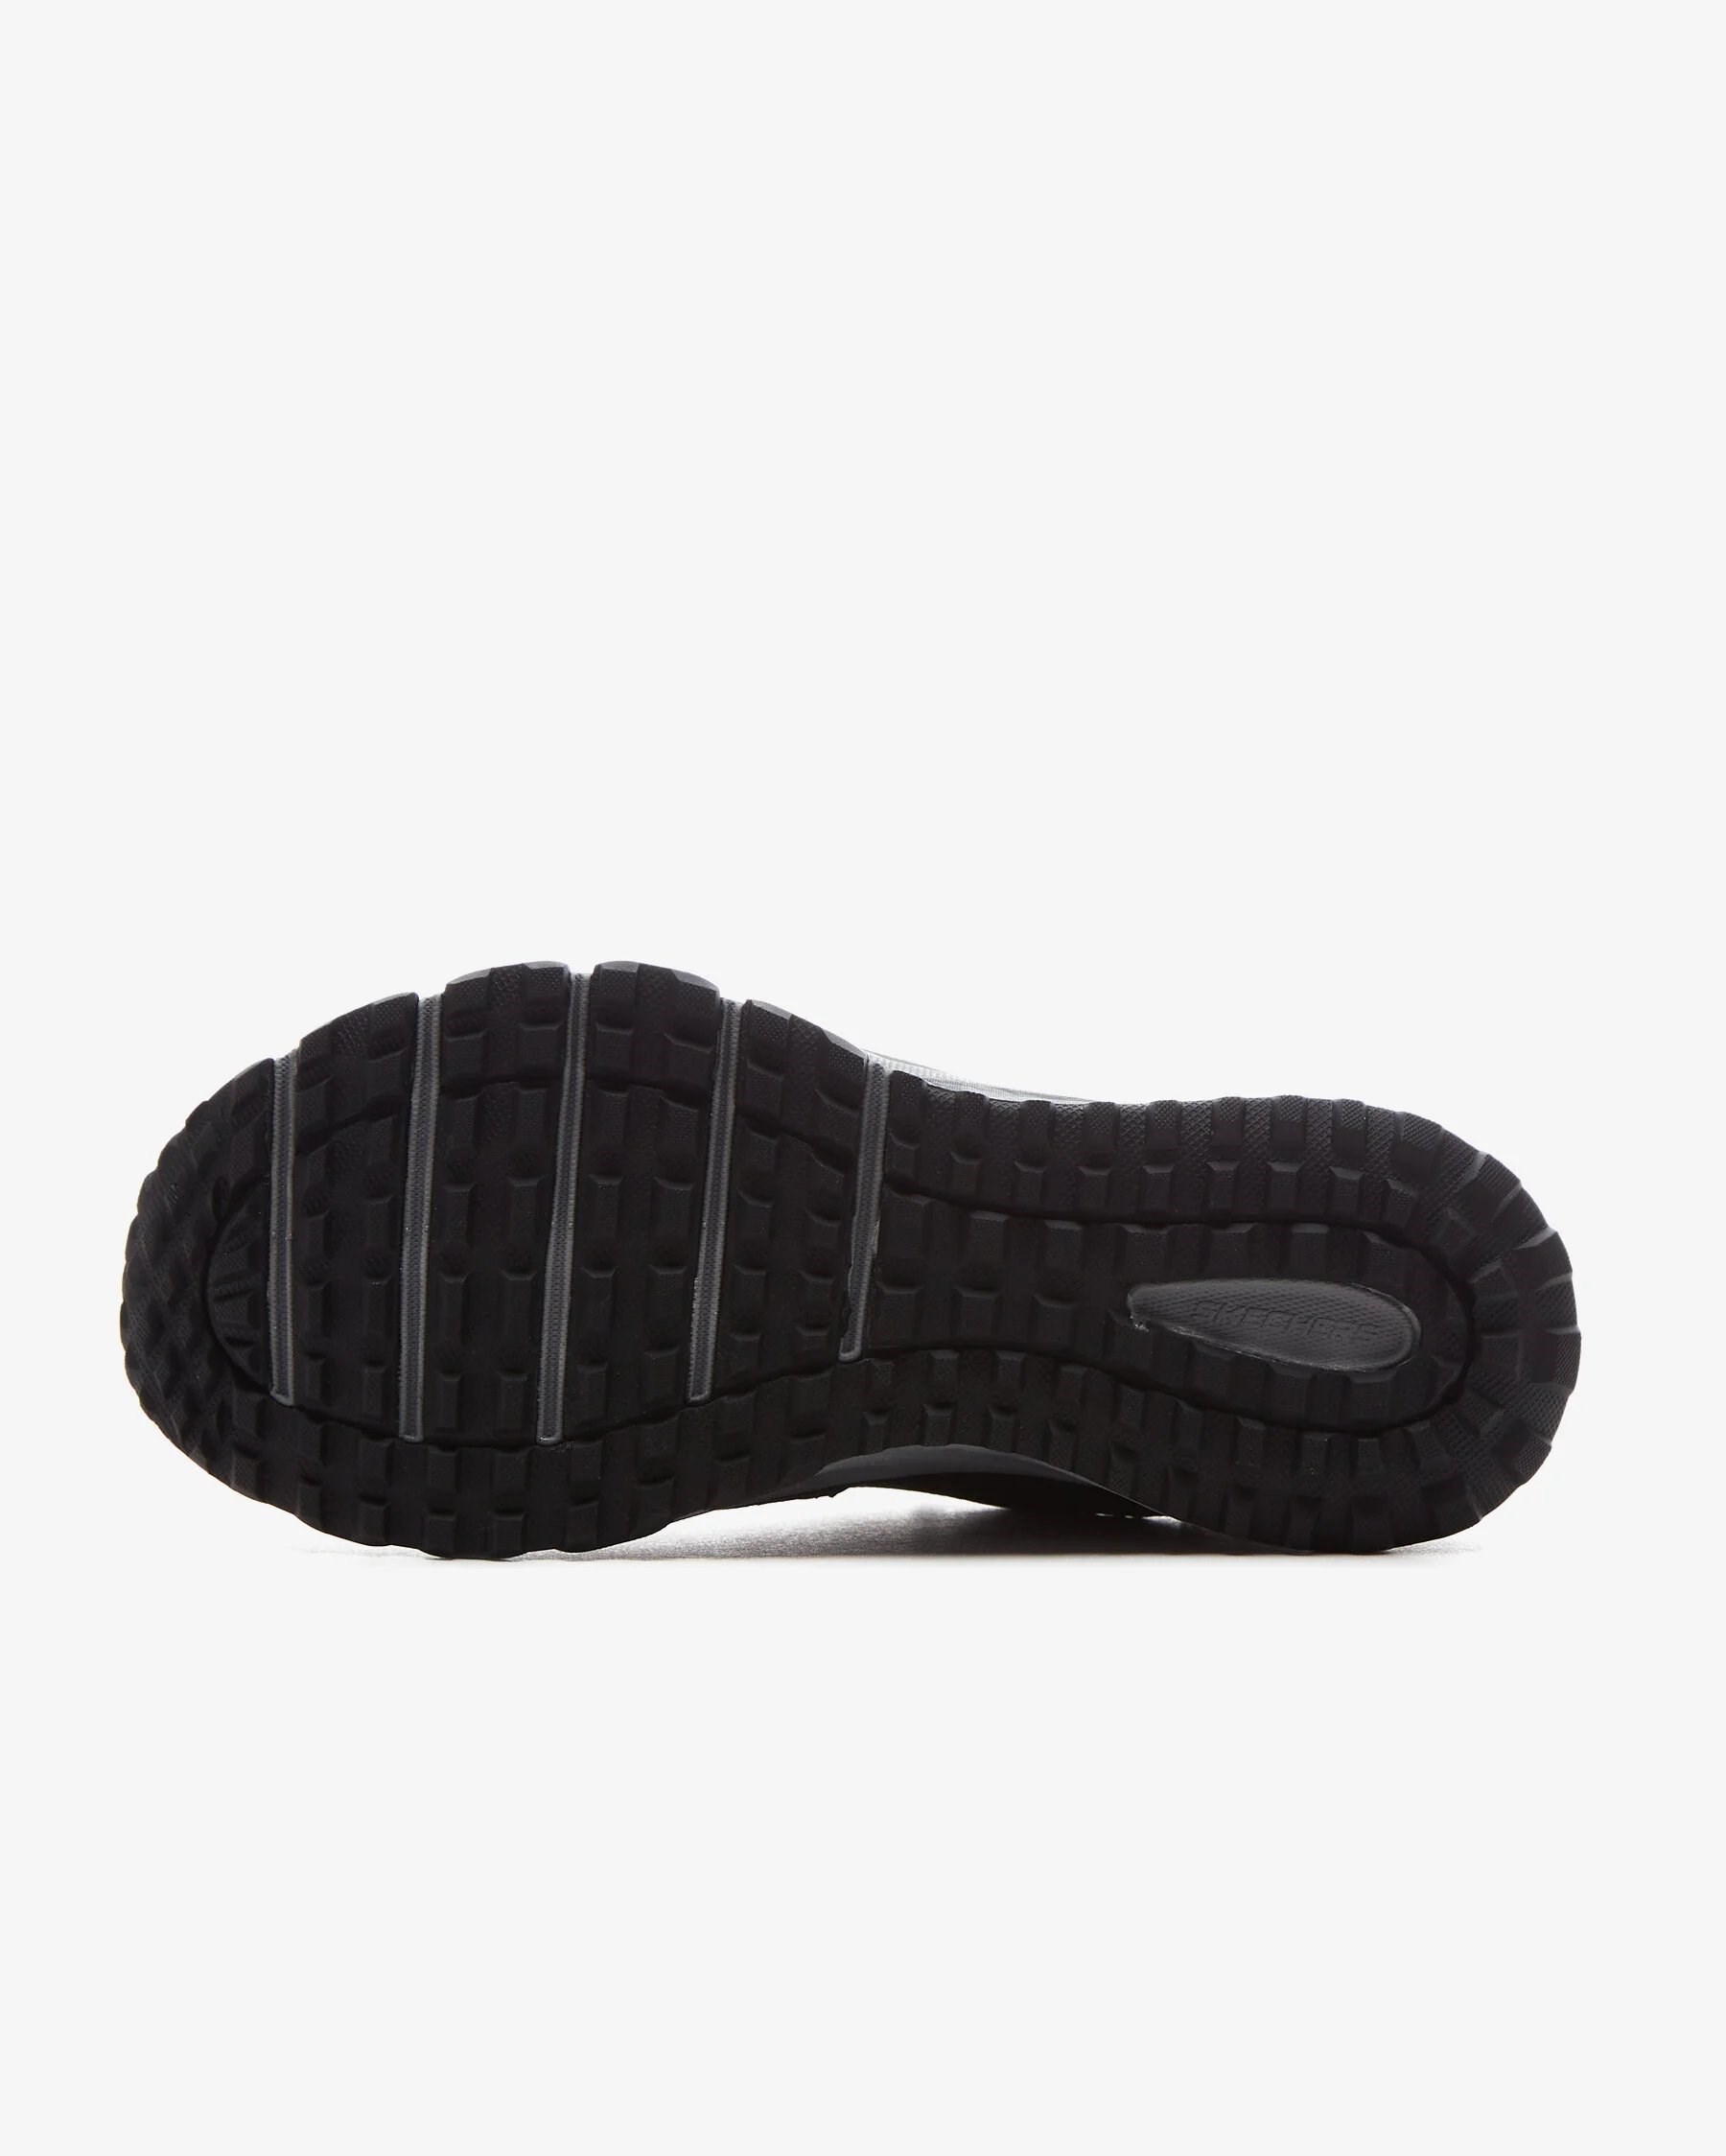 Skechers Escape Plan Kadın Spor Ayakkabısı Siyah / Pembe